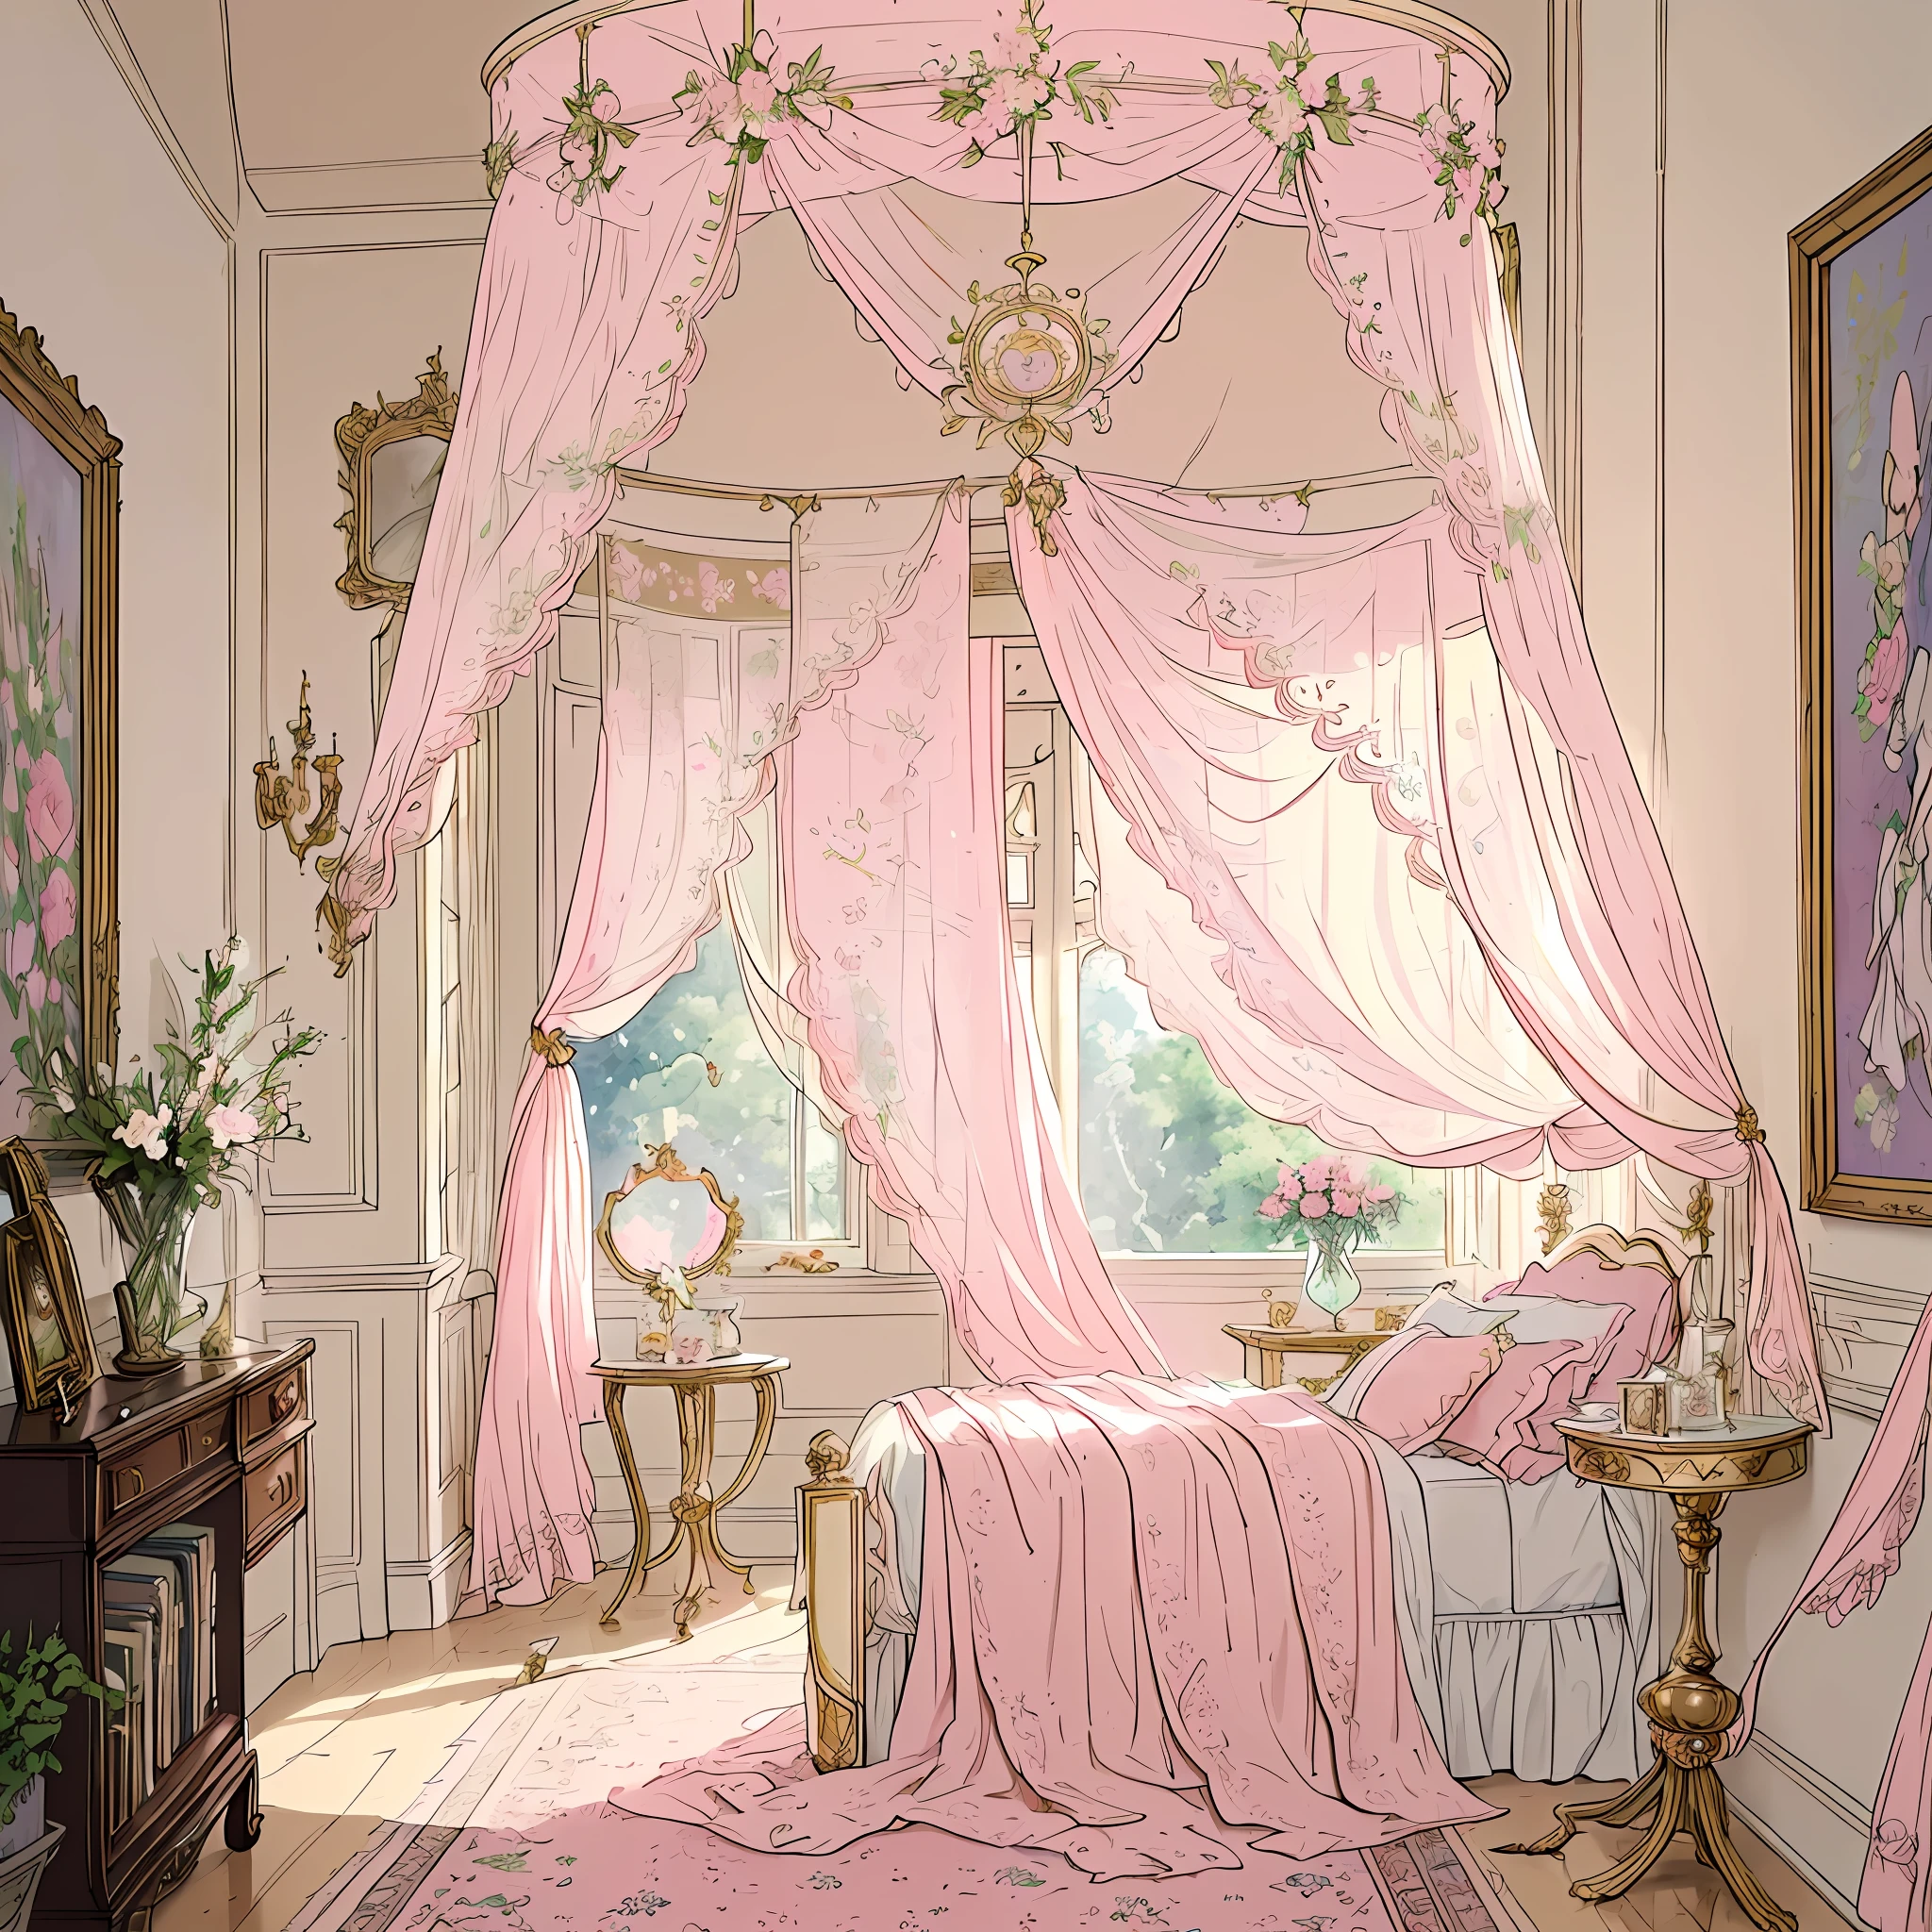 夢のような魅惑的な女性らしい寝室, オーナーのユニークな個性と好みを反映した複雑で楽しいディテールの配列で飾られています. 部屋は柔らかなパステルカラーで溢れています, 壁は優しい赤みを帯びたピンクで塗られています, 温かく居心地の良い雰囲気を醸し出しています.

部屋の焦点は、流れるような薄手のカーテンを備えた豪華な天蓋付きベッドです, おとぎ話の王女の住居を彷彿とさせる. ベッドカバーは、繊細な花柄で飾られた豪華なキルトです, 寝室に自然の美しさを加える.

魅力的なヴィンテージの洗面化粧台が窓の近くに立っています, 繊細なバラで縁取られた華やかな鏡をトッピング. 洗面化粧台はアンティークの香水瓶で飾られています, 可憐な化粧ブラシ, そして最愛の装身具のコレクション, ヴィンテージとセンチメンタルなものすべてに対するオーナーの愛情を反映しています.

柔らかな妖精の光が部屋全体に張られています, 暖かい, レースのカーテンを通してフィルタリングされる自然光を引き立てる魔法の輝き. 柔らかな照明がお部屋の様々な装飾の美しさを引き立てます, 居心地の良い快適な雰囲気を作り出す.

居心地の良い読書コーナーが隅にあります, 豪華なアームチェアと、愛する小説やおとぎ話でいっぱいの小さな本棚を完備. 壁は額入りのアートプリントと繊細な壁掛けで飾られています, 芸術と創造性に対する所有者の感謝を示す.

複雑な模様のエレガントなエリアラグが床を飾ります, 部屋に快適さとスタイルの層を追加します. ラグの柔らかな質感は、素足で豪華な抱擁に沈むように誘います.

繊細な鉢植えの植物や新鮮な花が部屋の周りに戦略的に配置されています, 空気に自然を吹き込む, 爽やかな香りと静寂な空間に活力を加える.

部屋の全体的な雰囲気は優雅さを醸し出しています, 優雅, と魅力, オーナーが後退し、独自のスタイルを受け入れることができる快適さと美しさの天国.

アートワーク, デジタルイラストレーション, ソフトでパステルカラーにこだわって